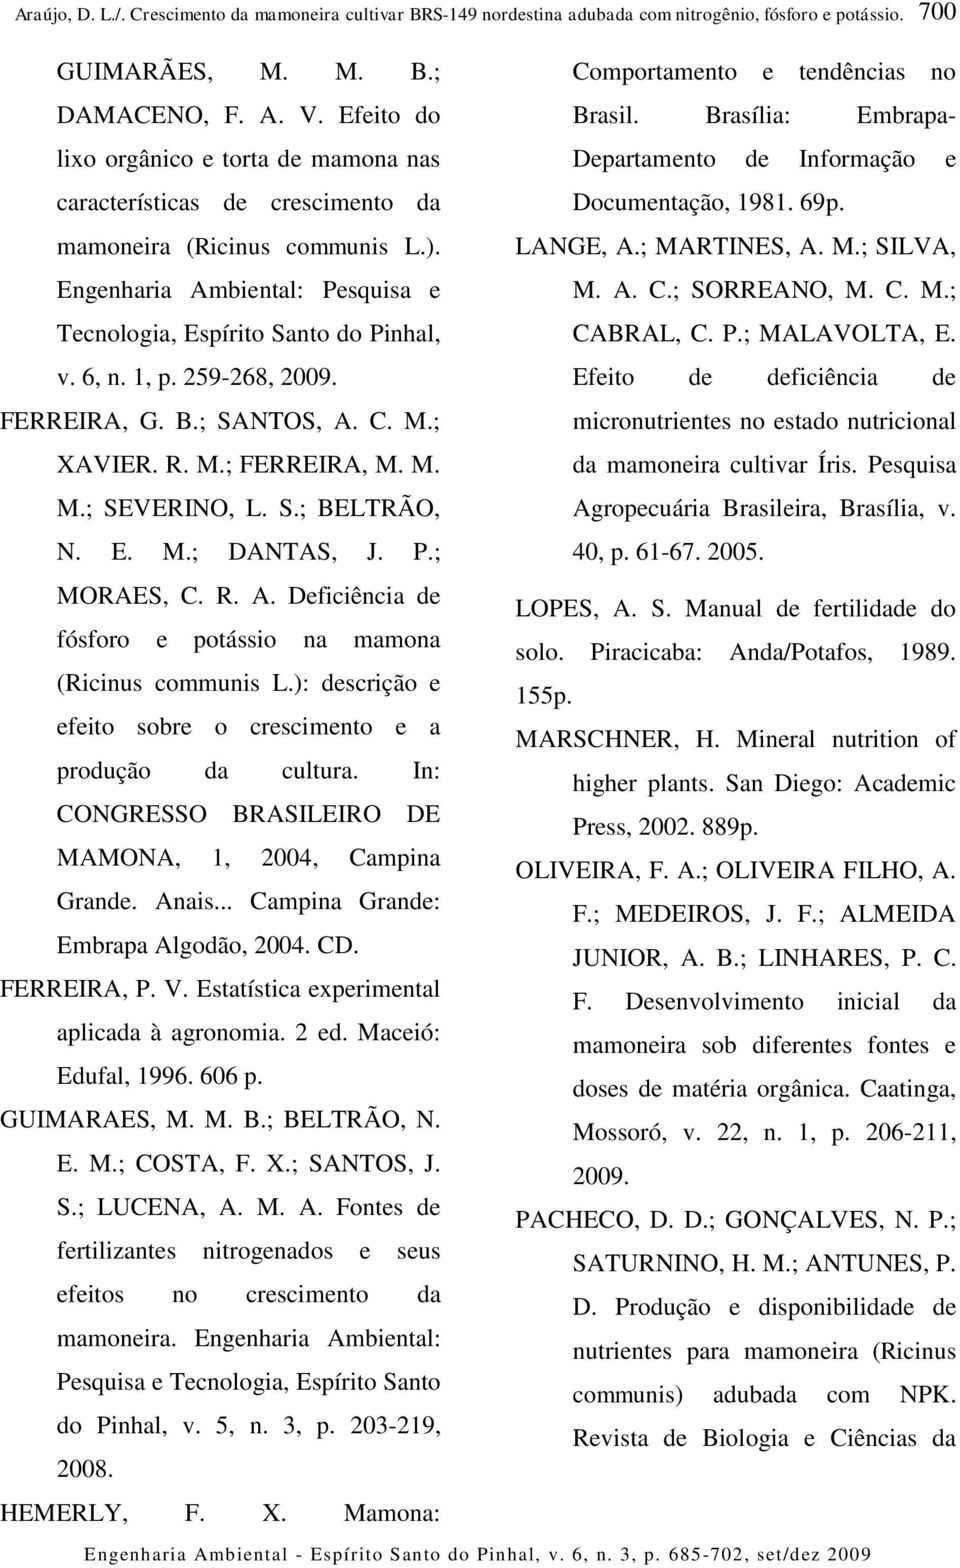 Engenharia Ambiental: Pesquisa e Tecnologia, Espírito Santo do Pinhal, Documentação, 1981. 69p. LANGE, A.; MARTINES, A. M.; SILVA, M. A. C.; SORREANO, M. C. M.; CABRAL, C. P.; MALAVOLTA, E. v. 6, n.